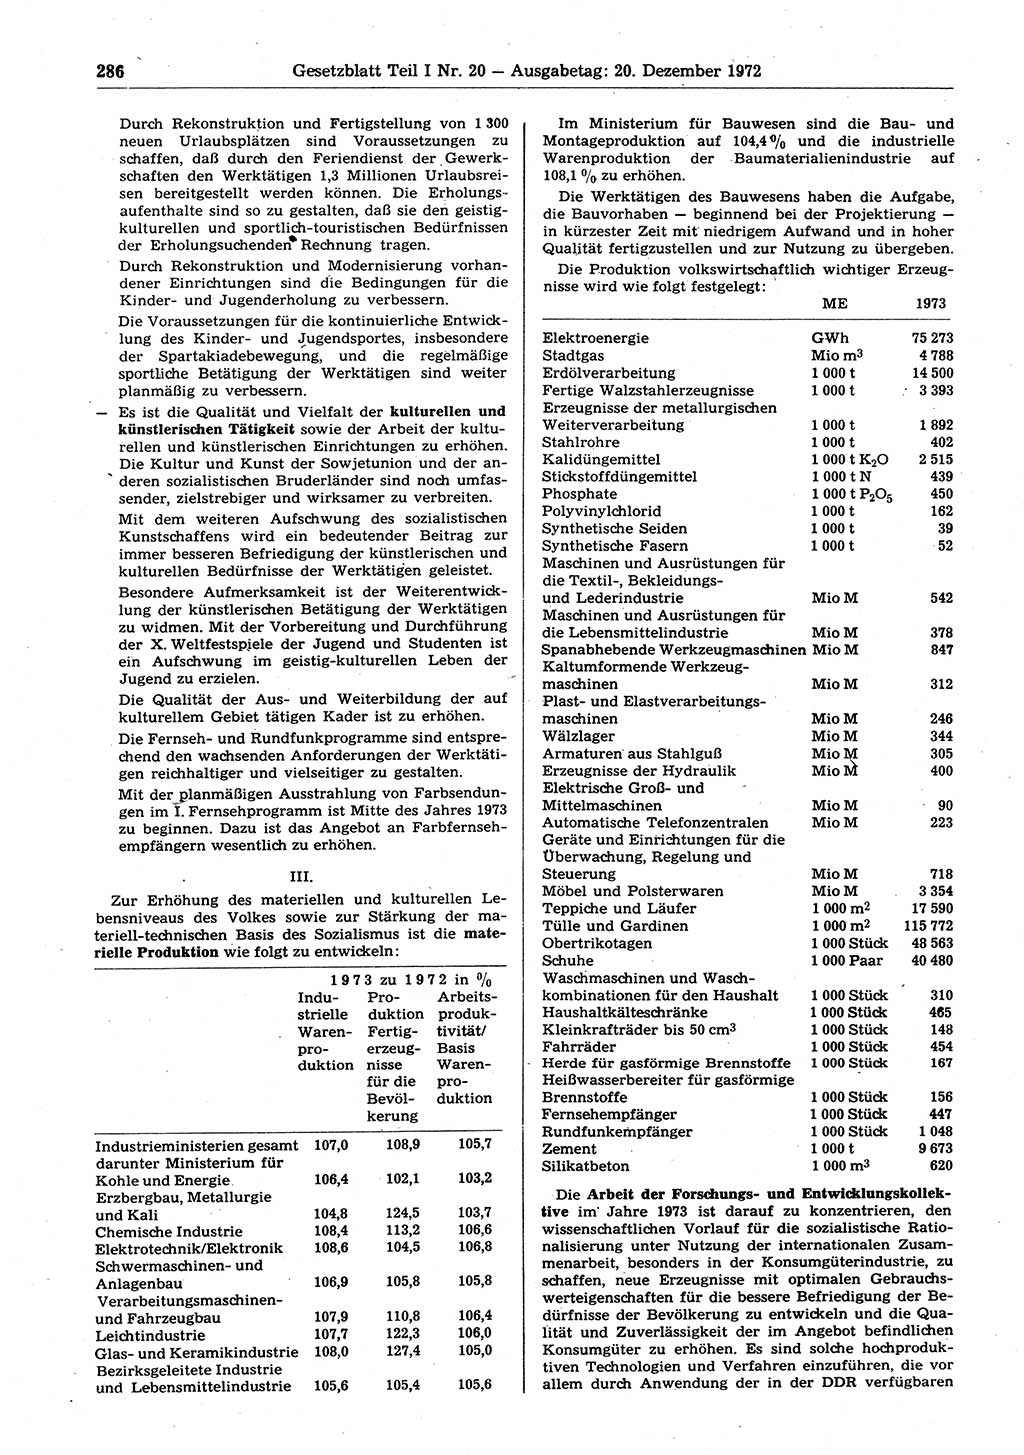 Gesetzblatt (GBl.) der Deutschen Demokratischen Republik (DDR) Teil Ⅰ 1972, Seite 286 (GBl. DDR Ⅰ 1972, S. 286)